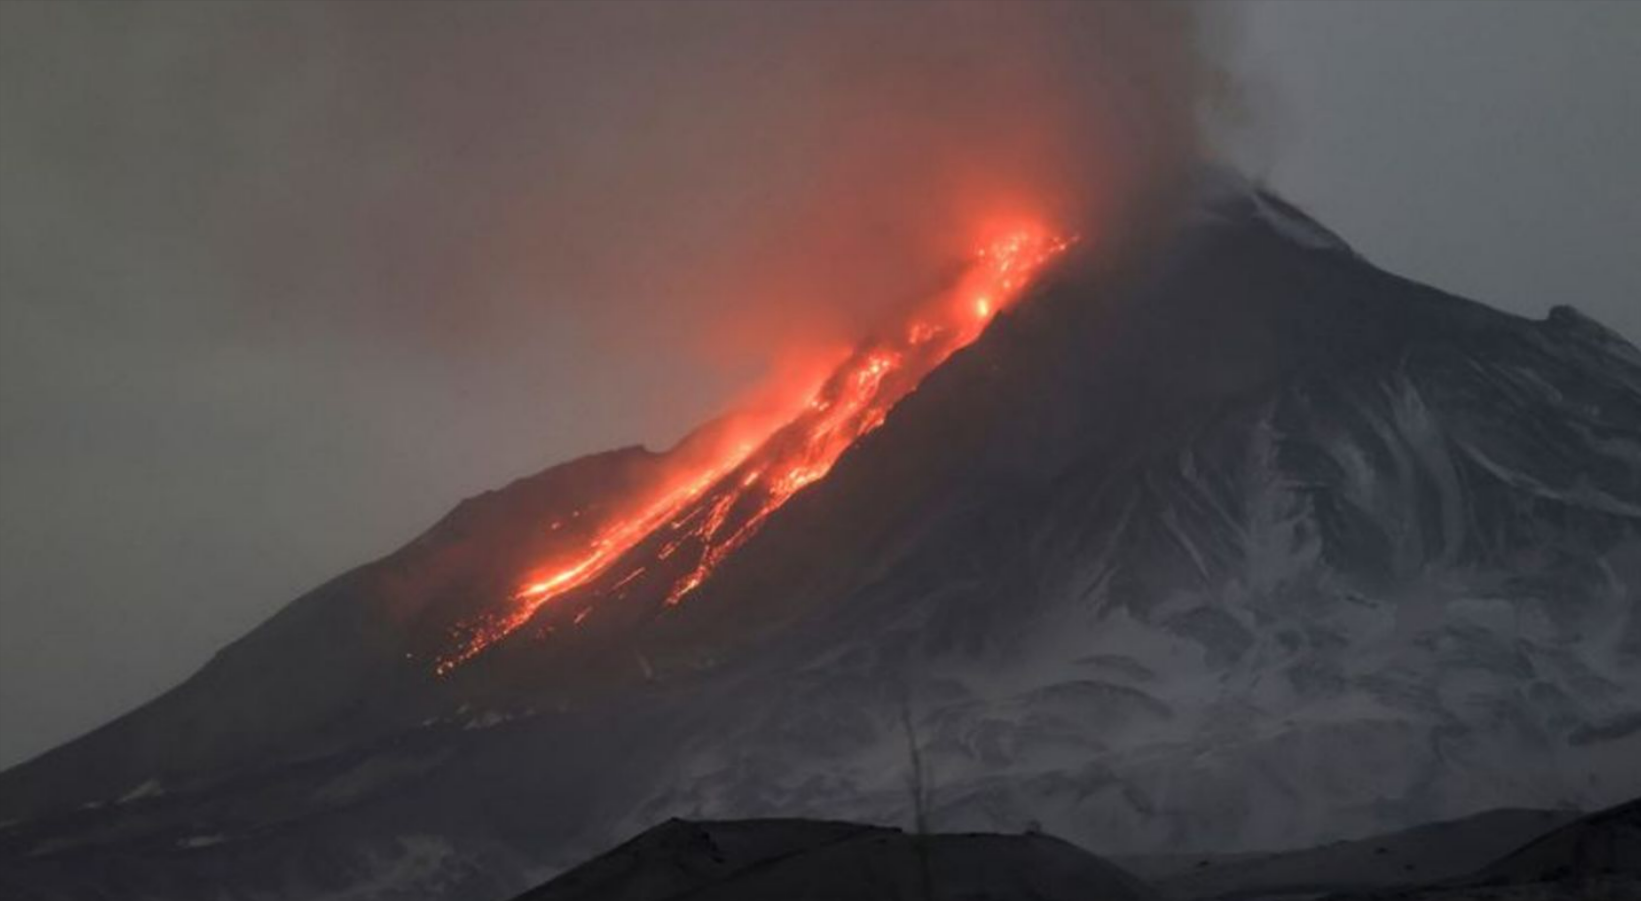 Vulkanausbruch mitten in Europa! Behörden evakuieren Umgebung, Lava brodelt aus dem Krater